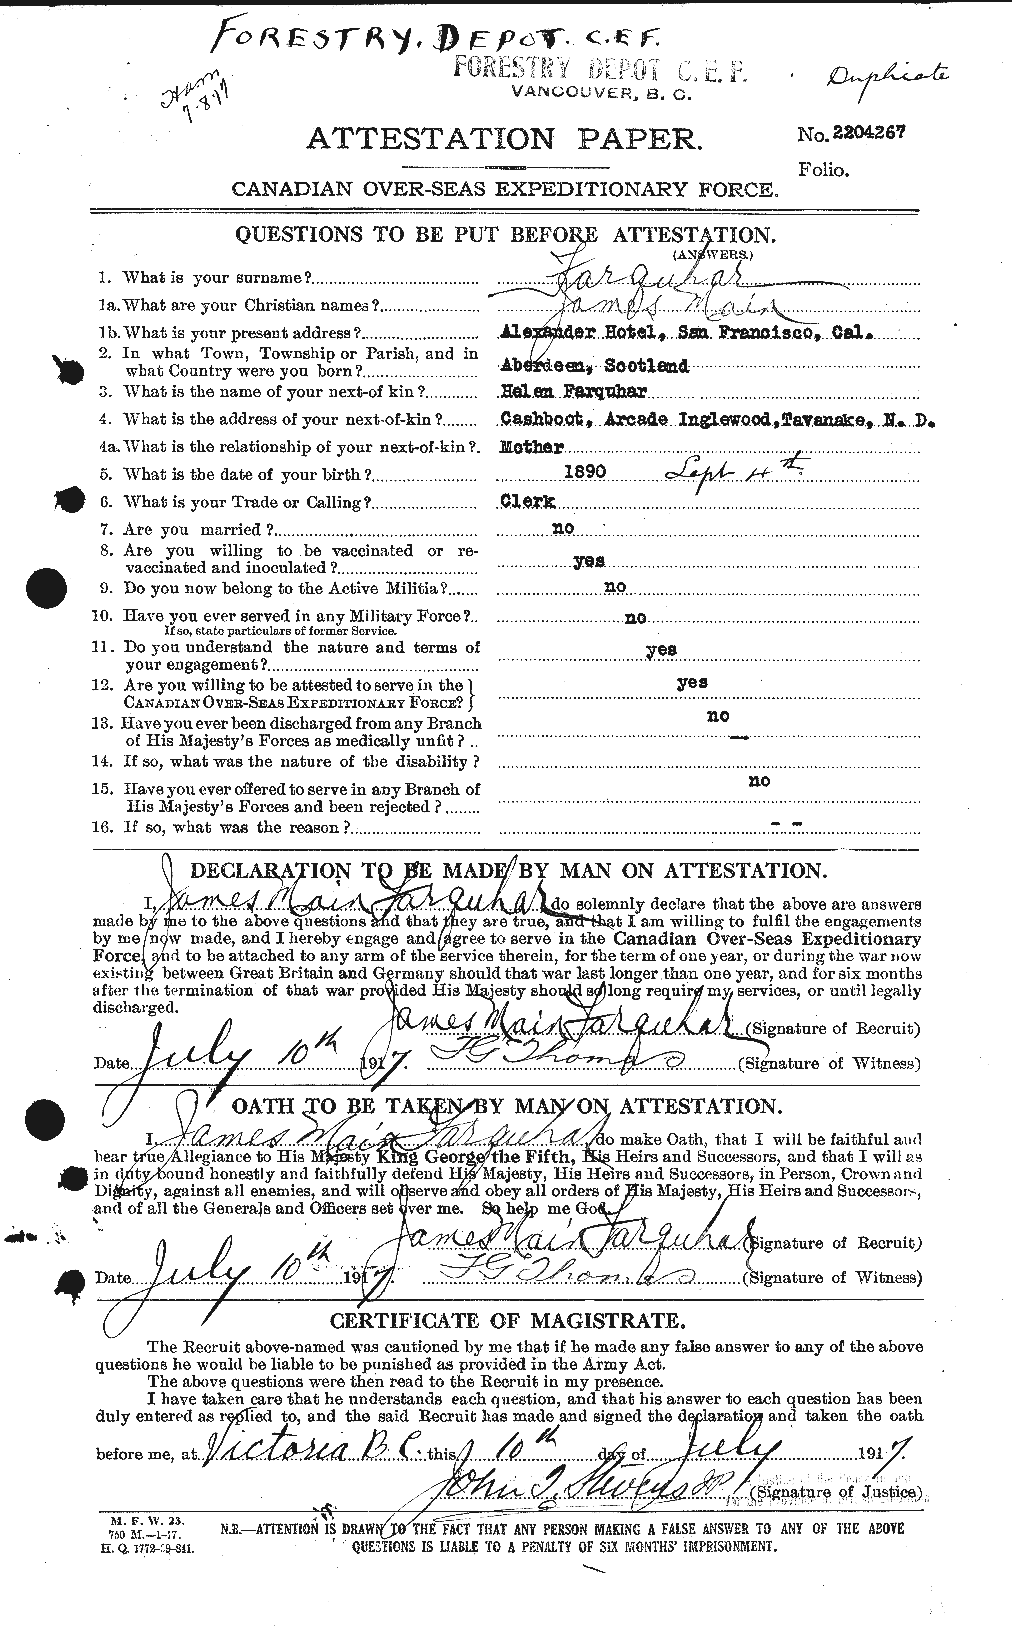 Dossiers du Personnel de la Première Guerre mondiale - CEC 318777a